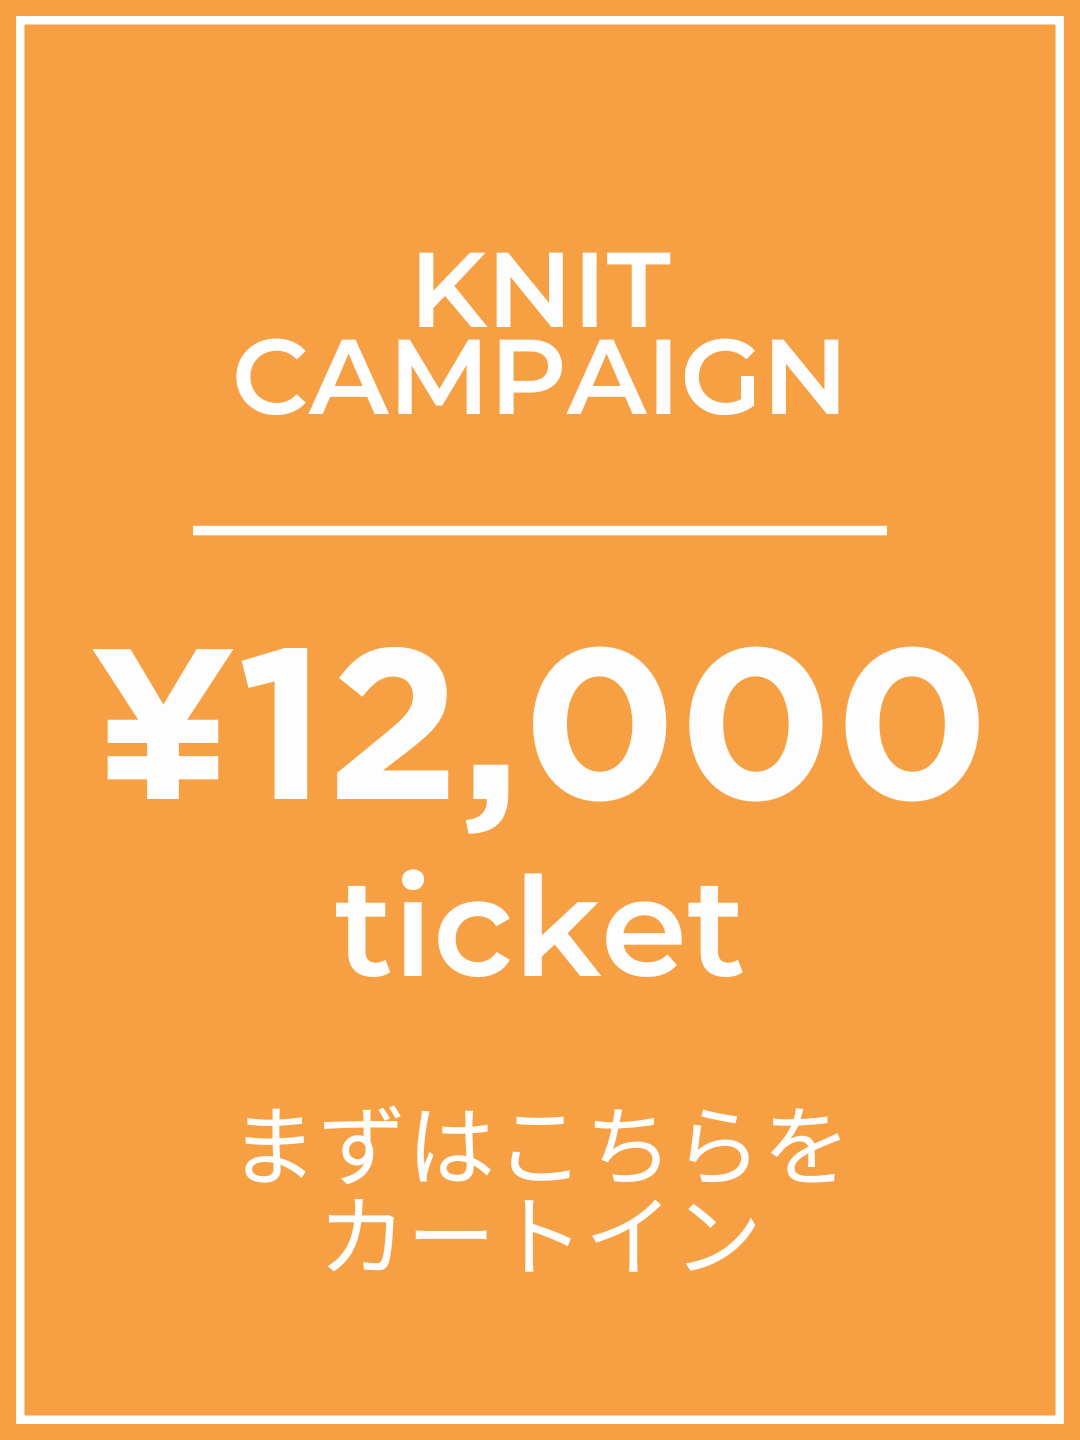 【1番初めにこちらをカートイン】¥12,000チケット